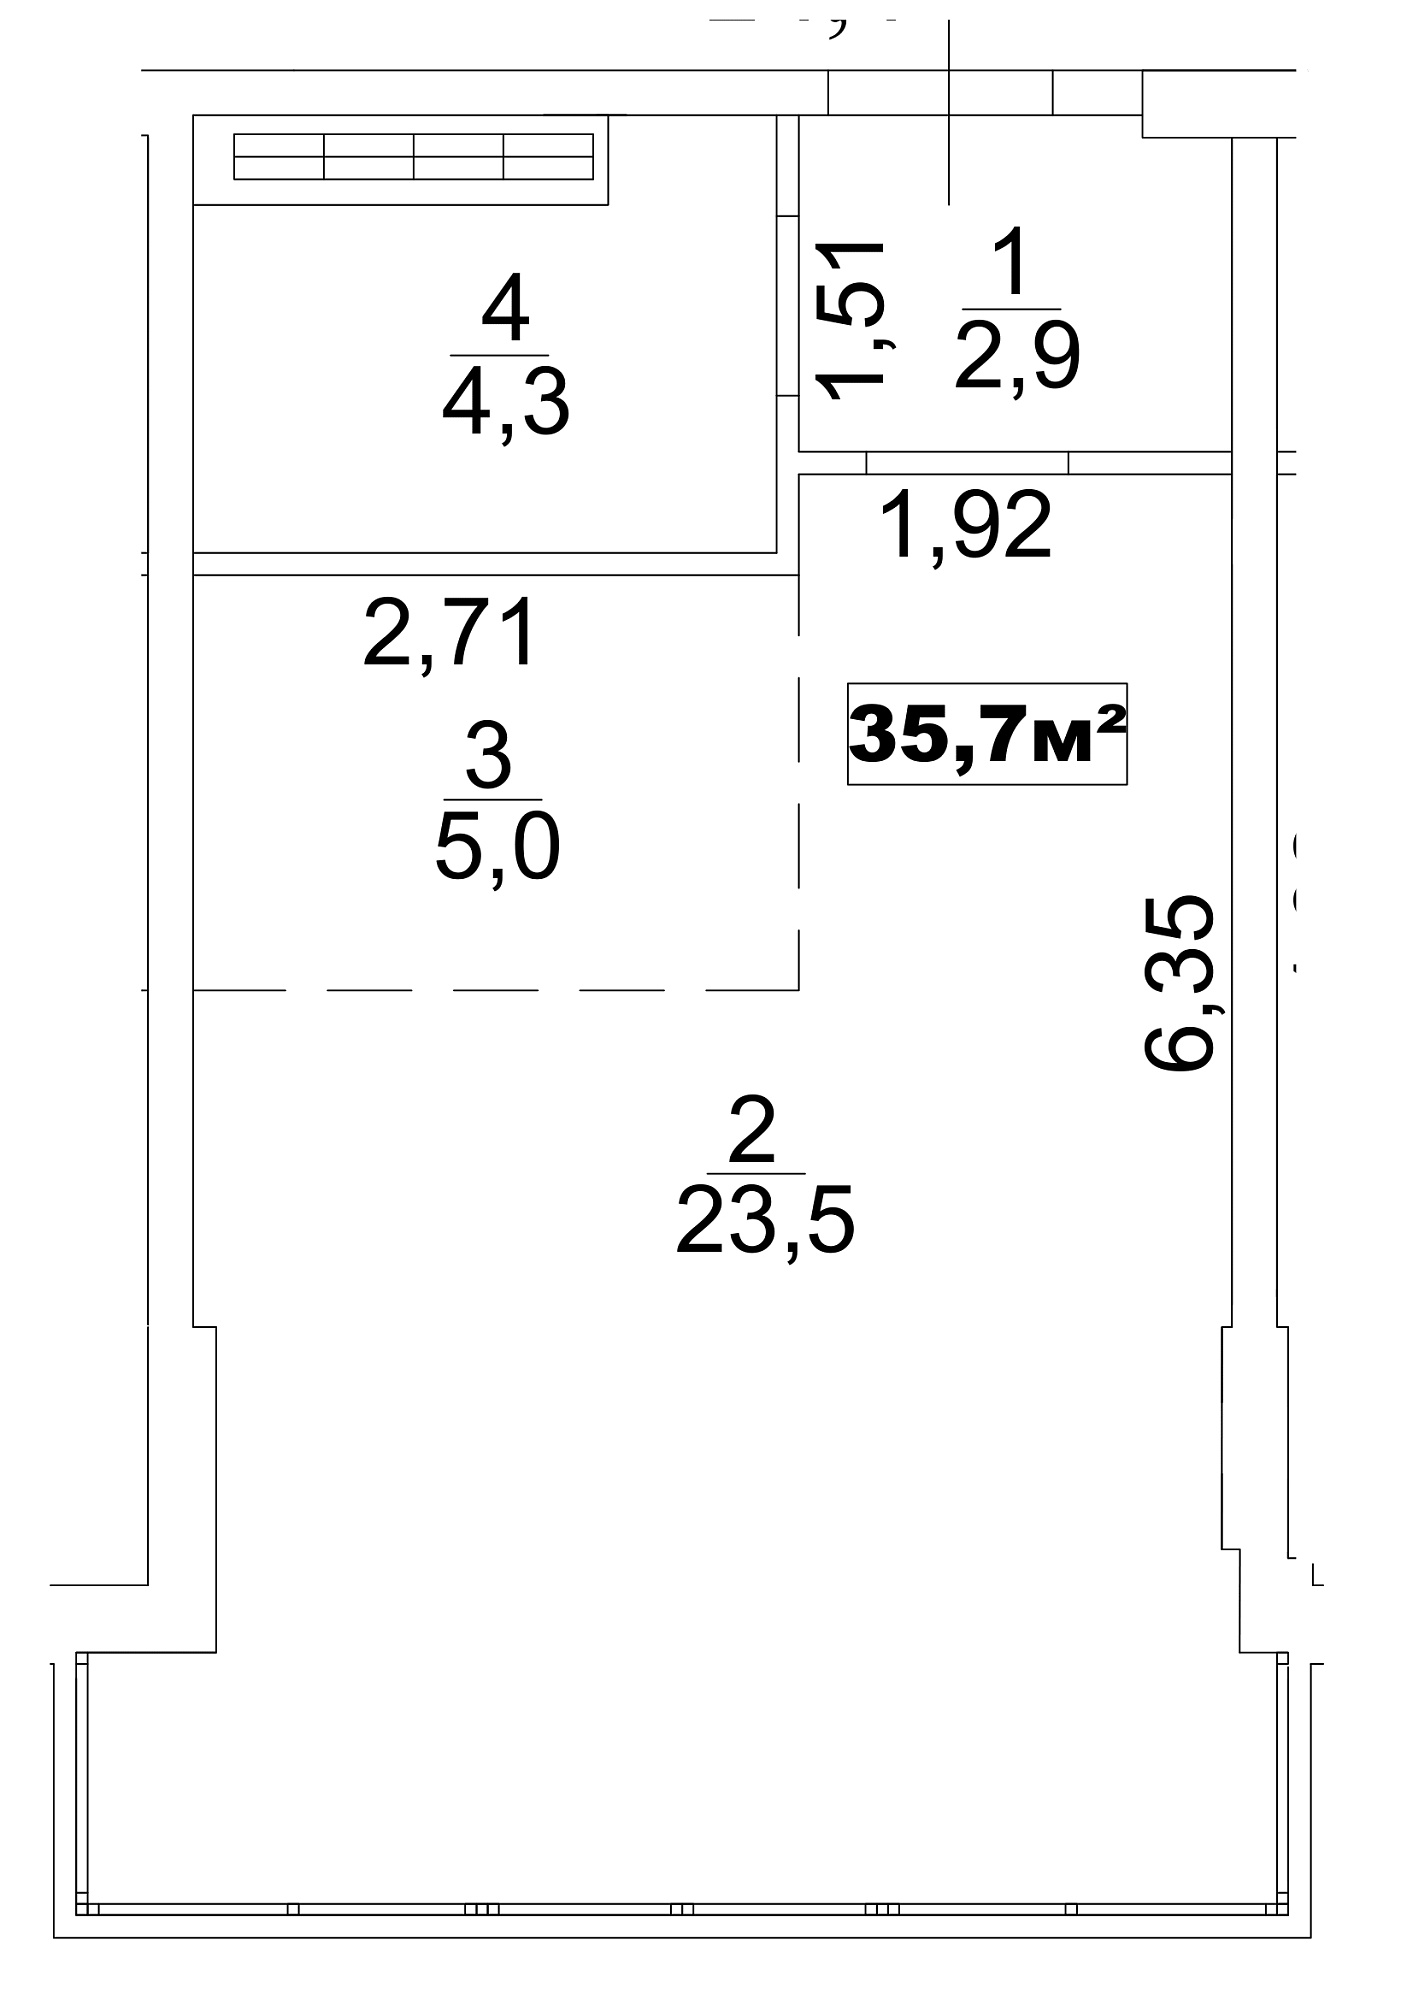 Планування Smart-квартира площею 35.7м2, AB-13-06/0043б.